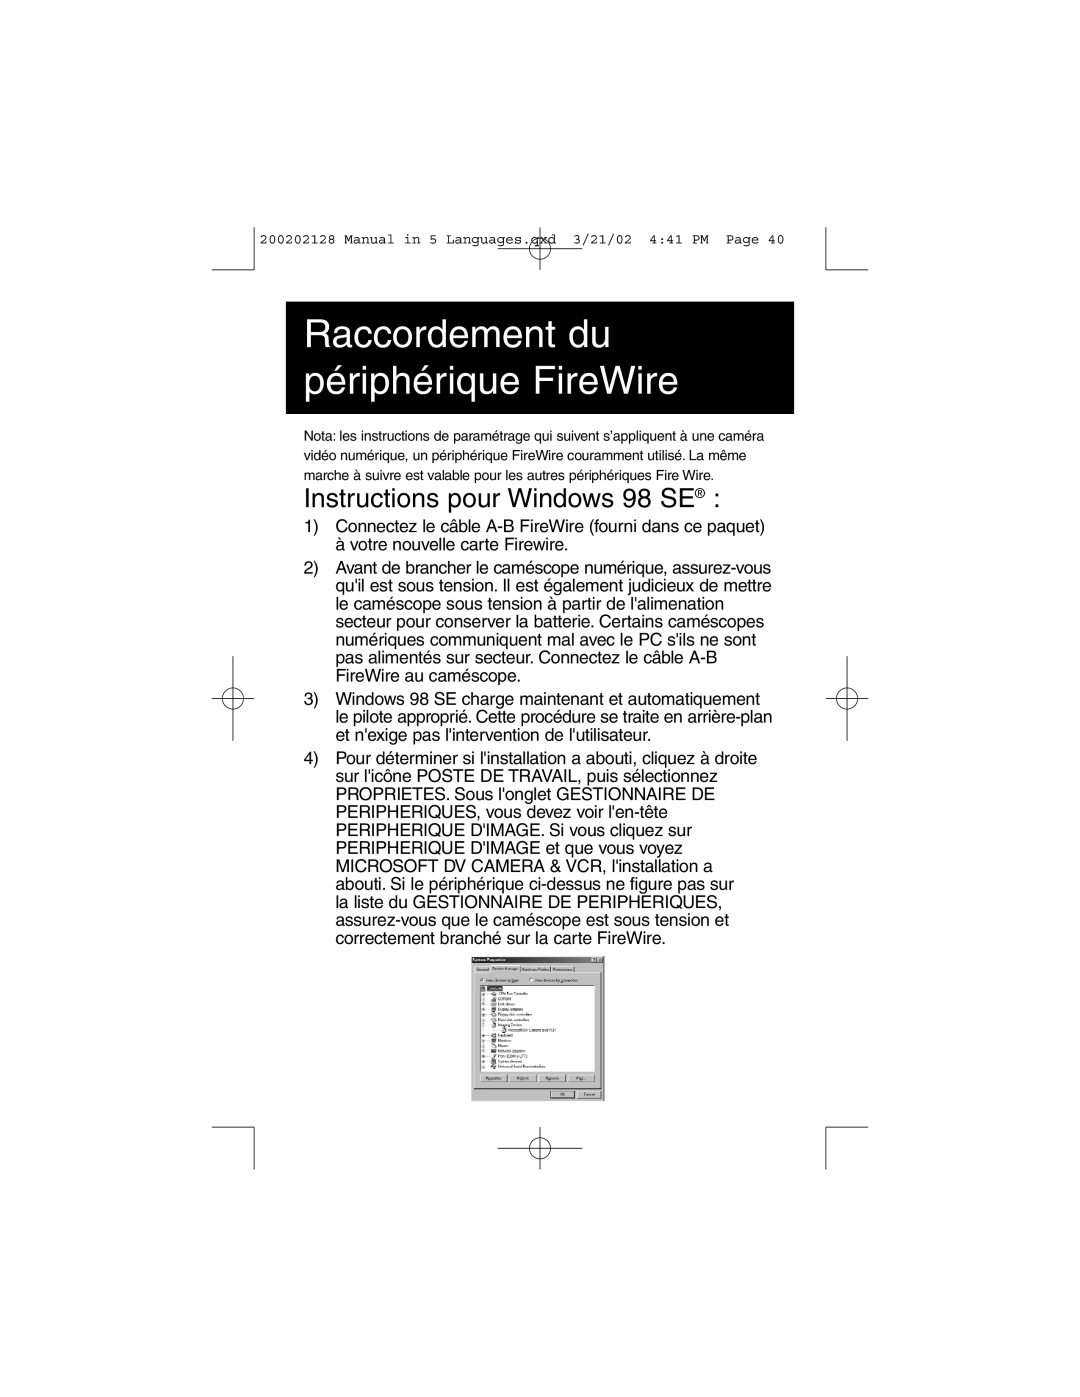 Tripp Lite F200-003-R user manual Raccordement du périphérique FireWire, Instructions pour Windows 98 SE 